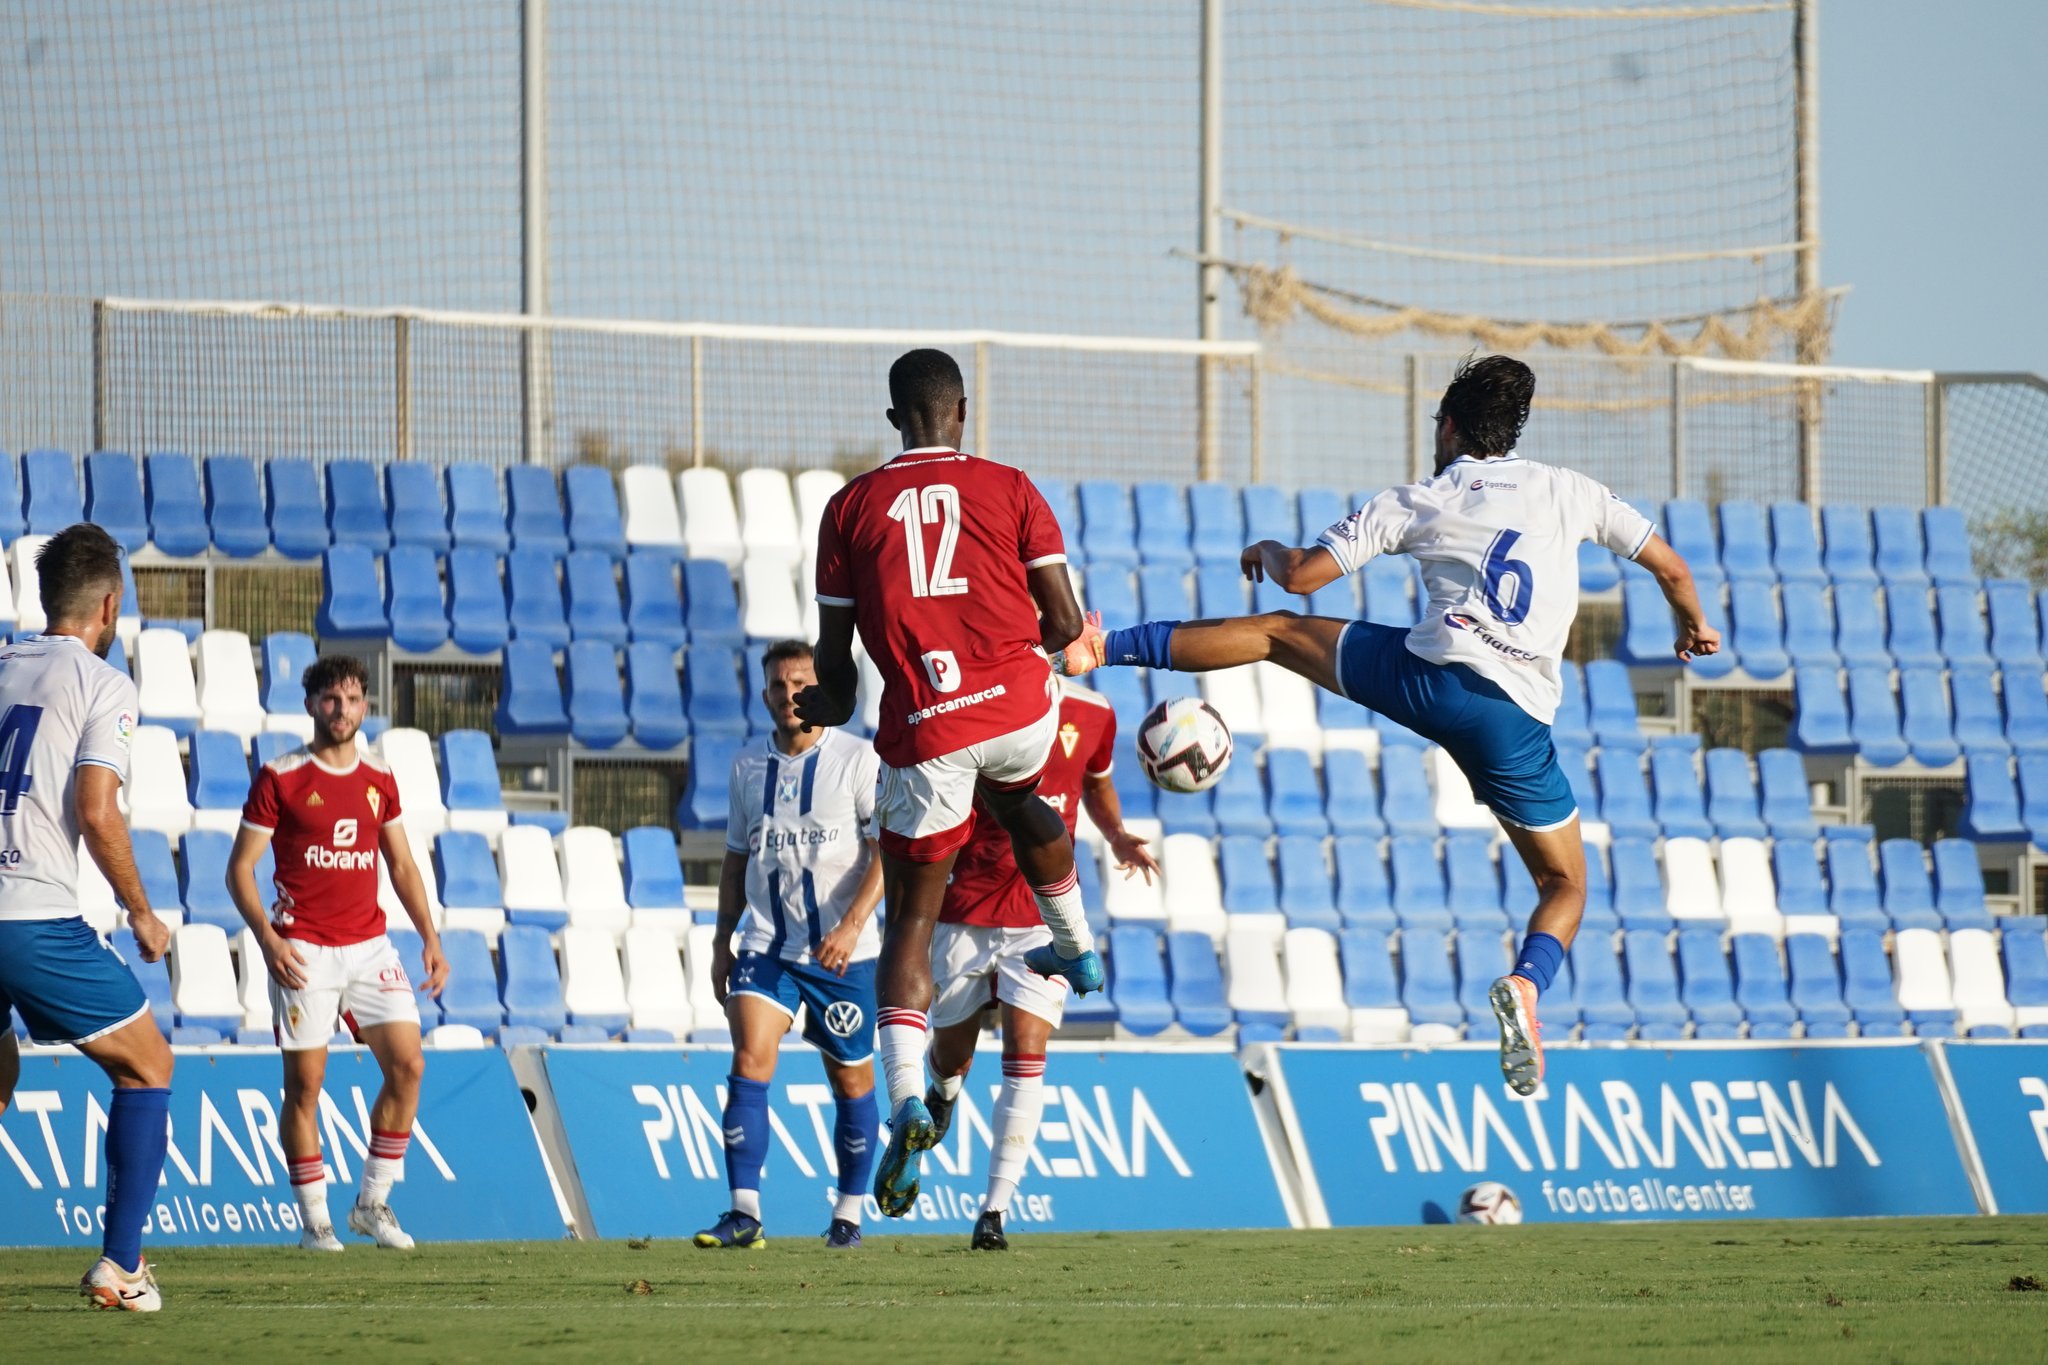 Crónica del R. Murcia 3-0 CD Tenerife: "El Tenerife cae holgadamente ante el Murcia"